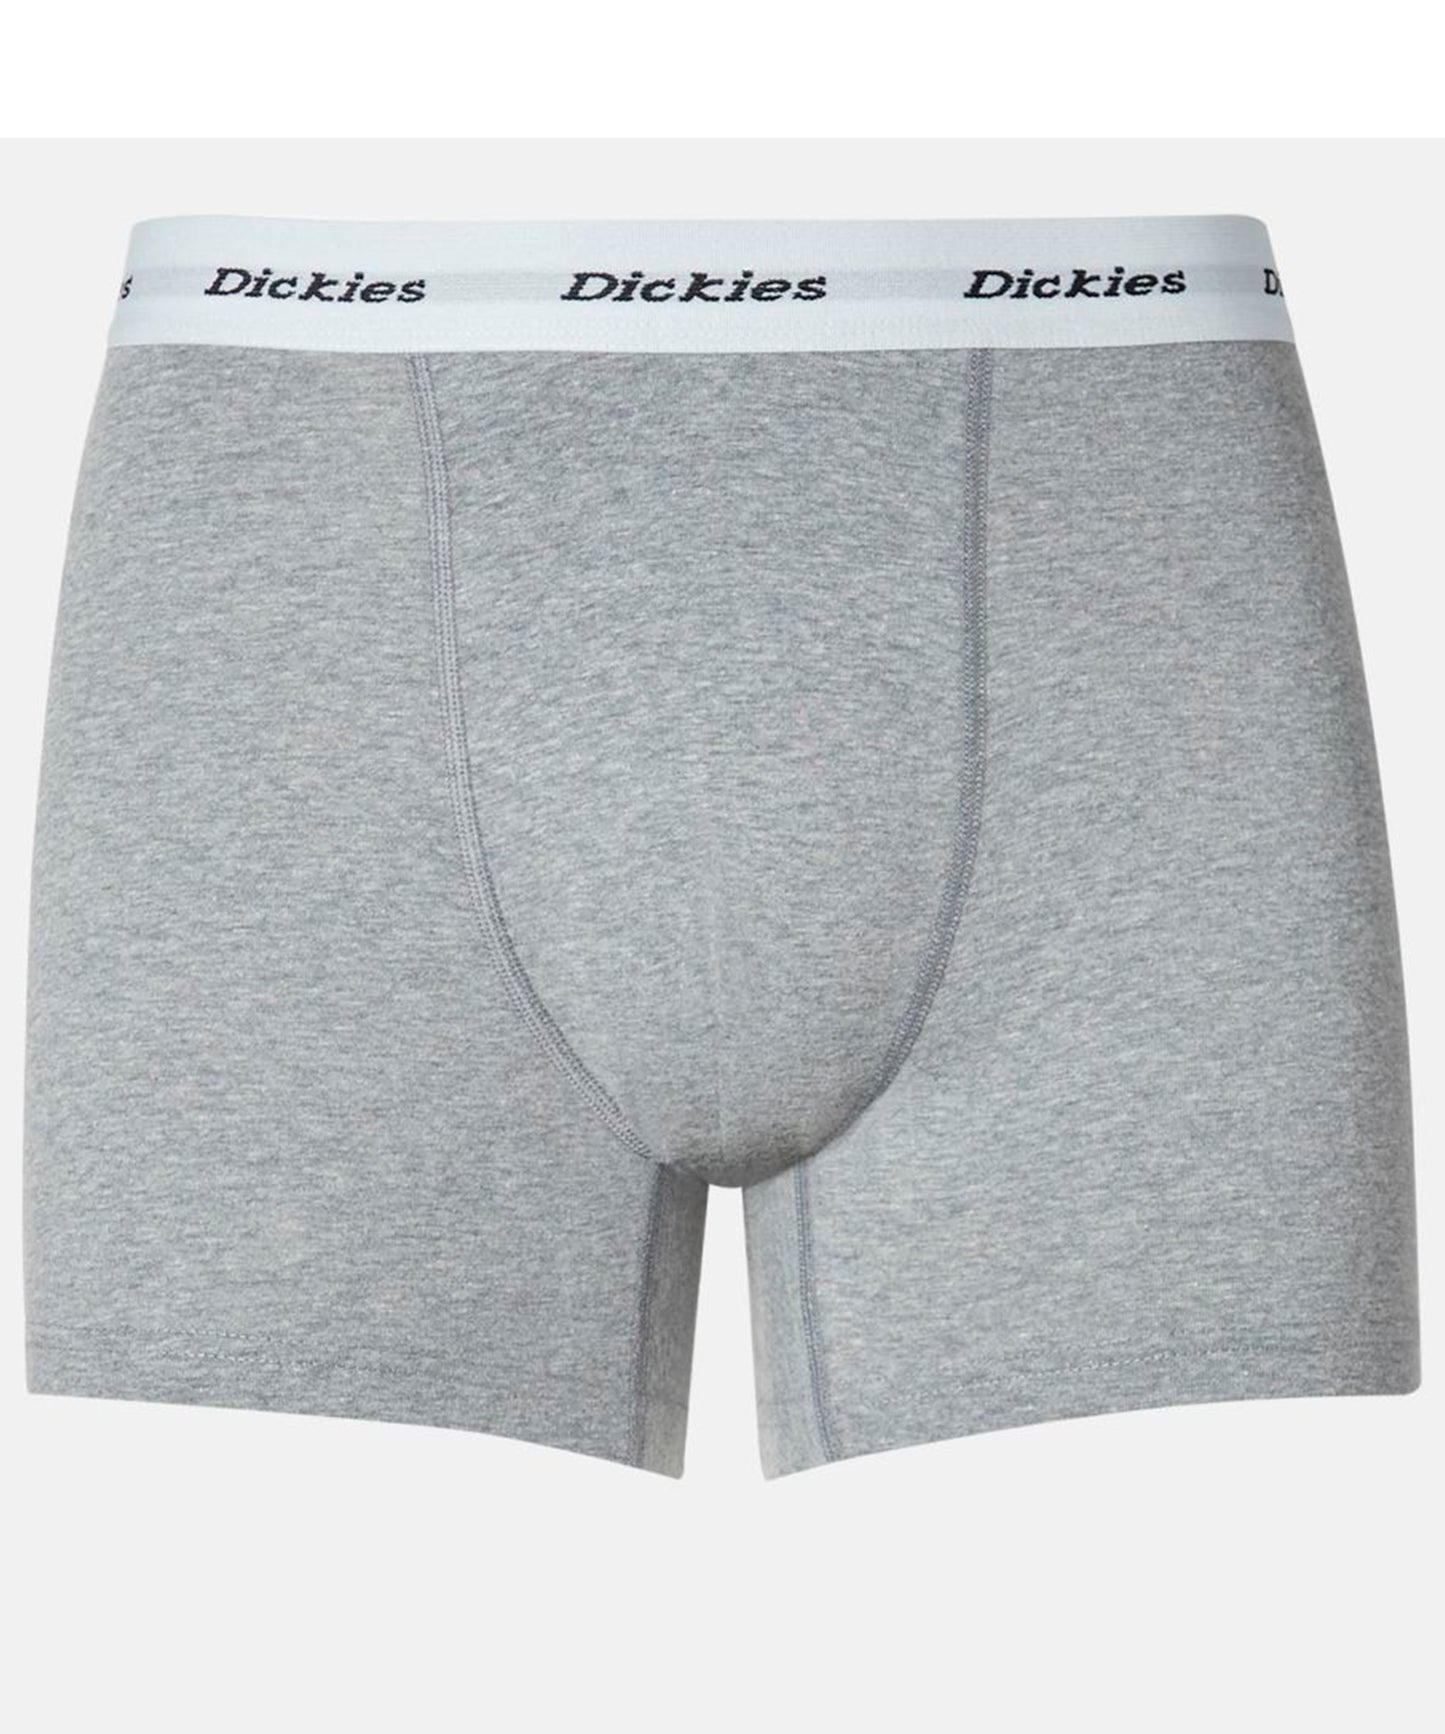 dickies-2-boxer-hombre-color-negro-y-gris-cintura-elastica-logo-dickies-suaves-y-transpirables-algodón-y-elastano